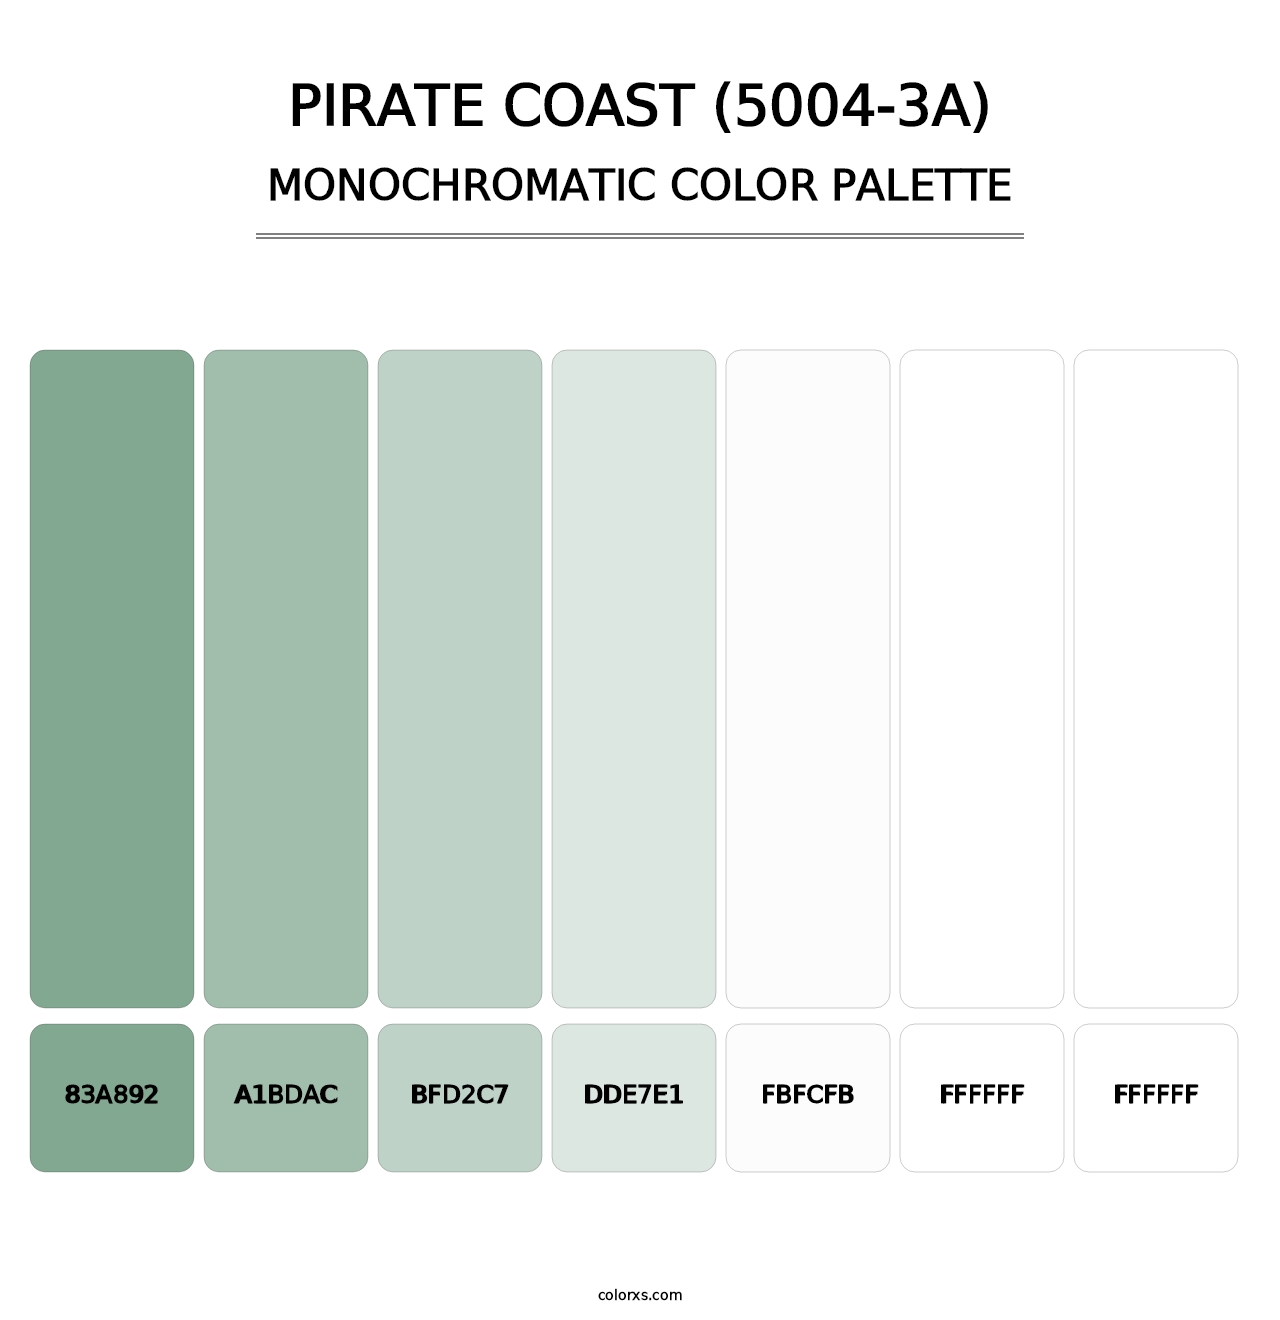 Pirate Coast (5004-3A) - Monochromatic Color Palette